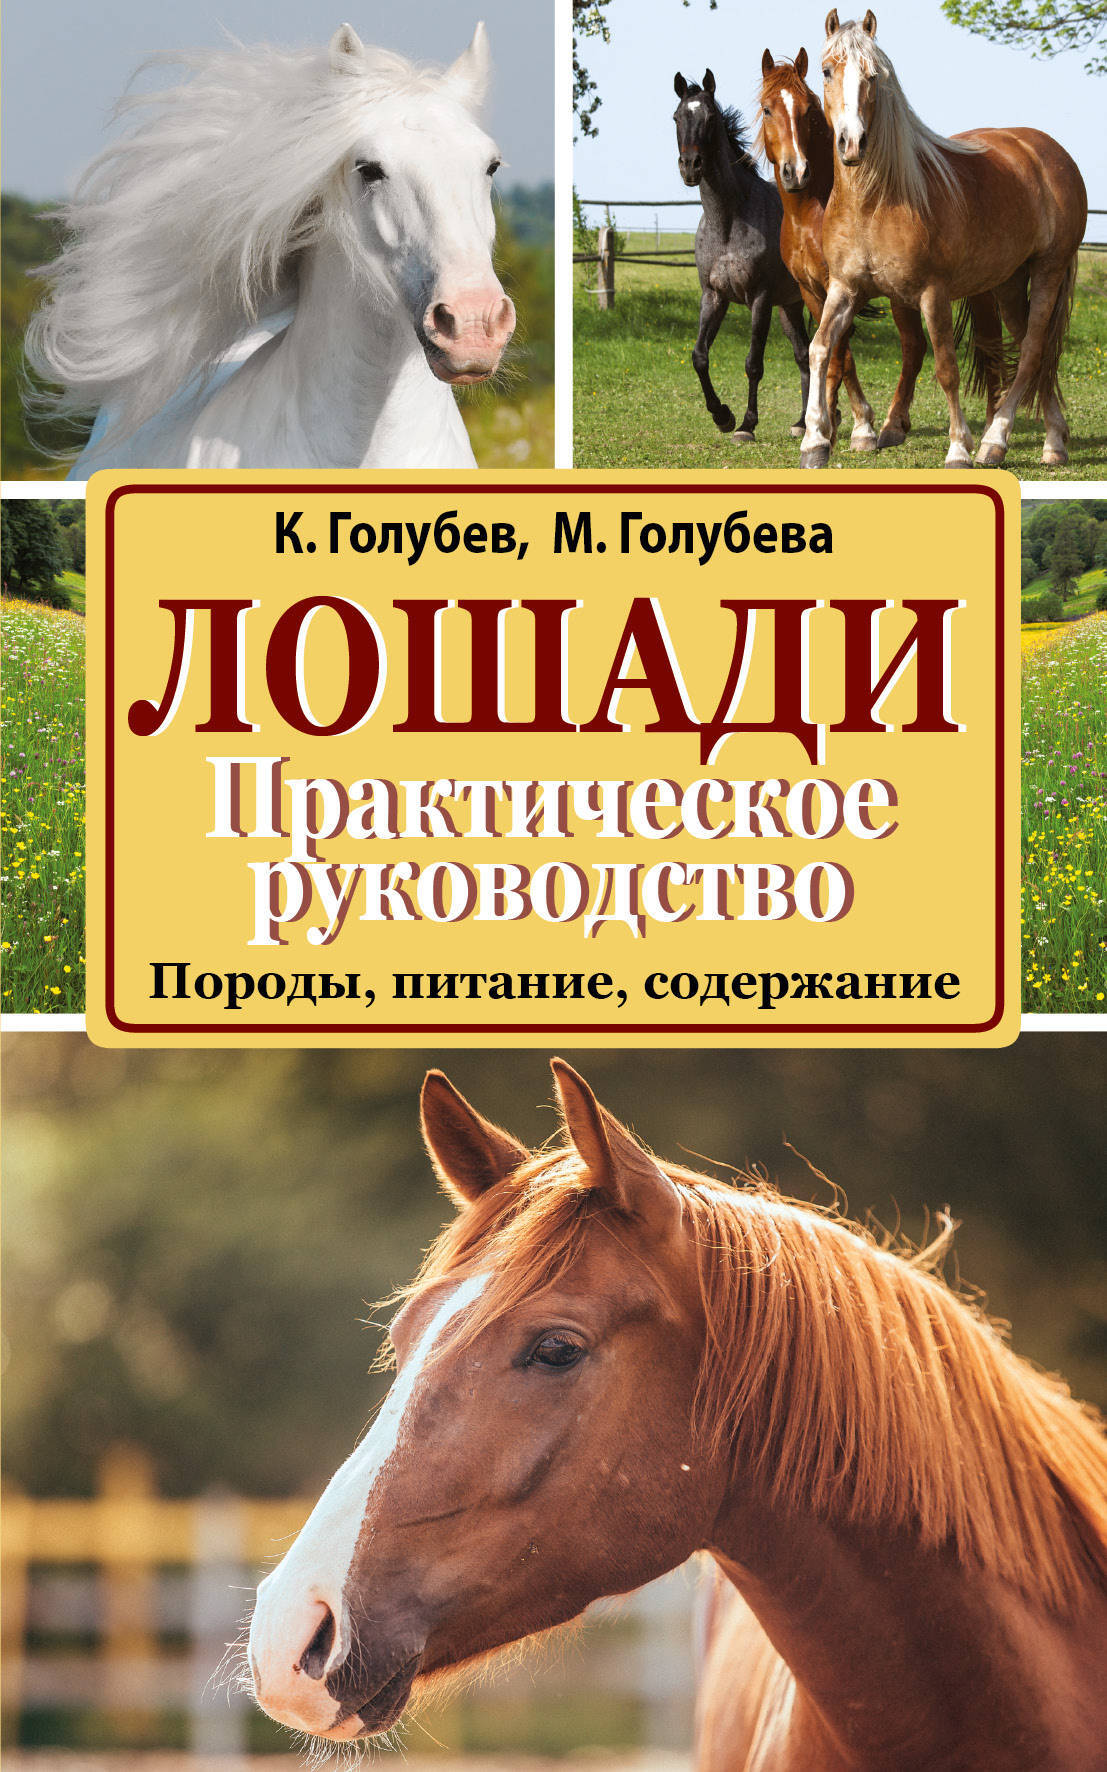 Купить книгу лошади. Книги про лошадей. Книга кони. Книги про лошадей Художественные. Книги Художественные про коней.